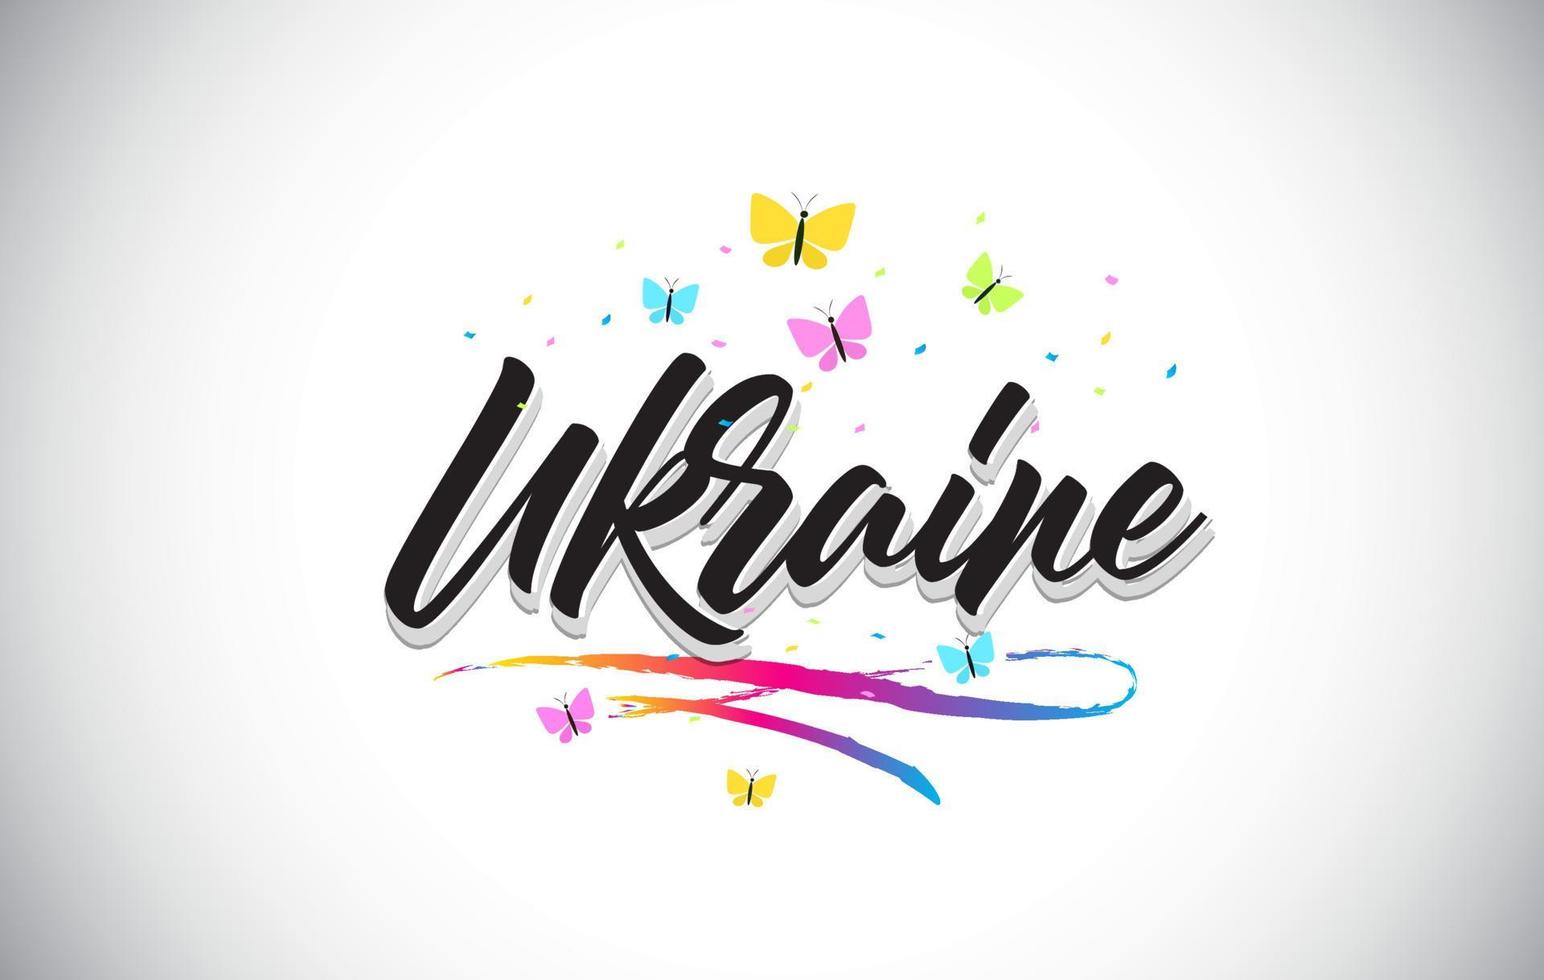 texto de palavra de vetor manuscrito Ucrânia com borboletas e swoosh colorido.